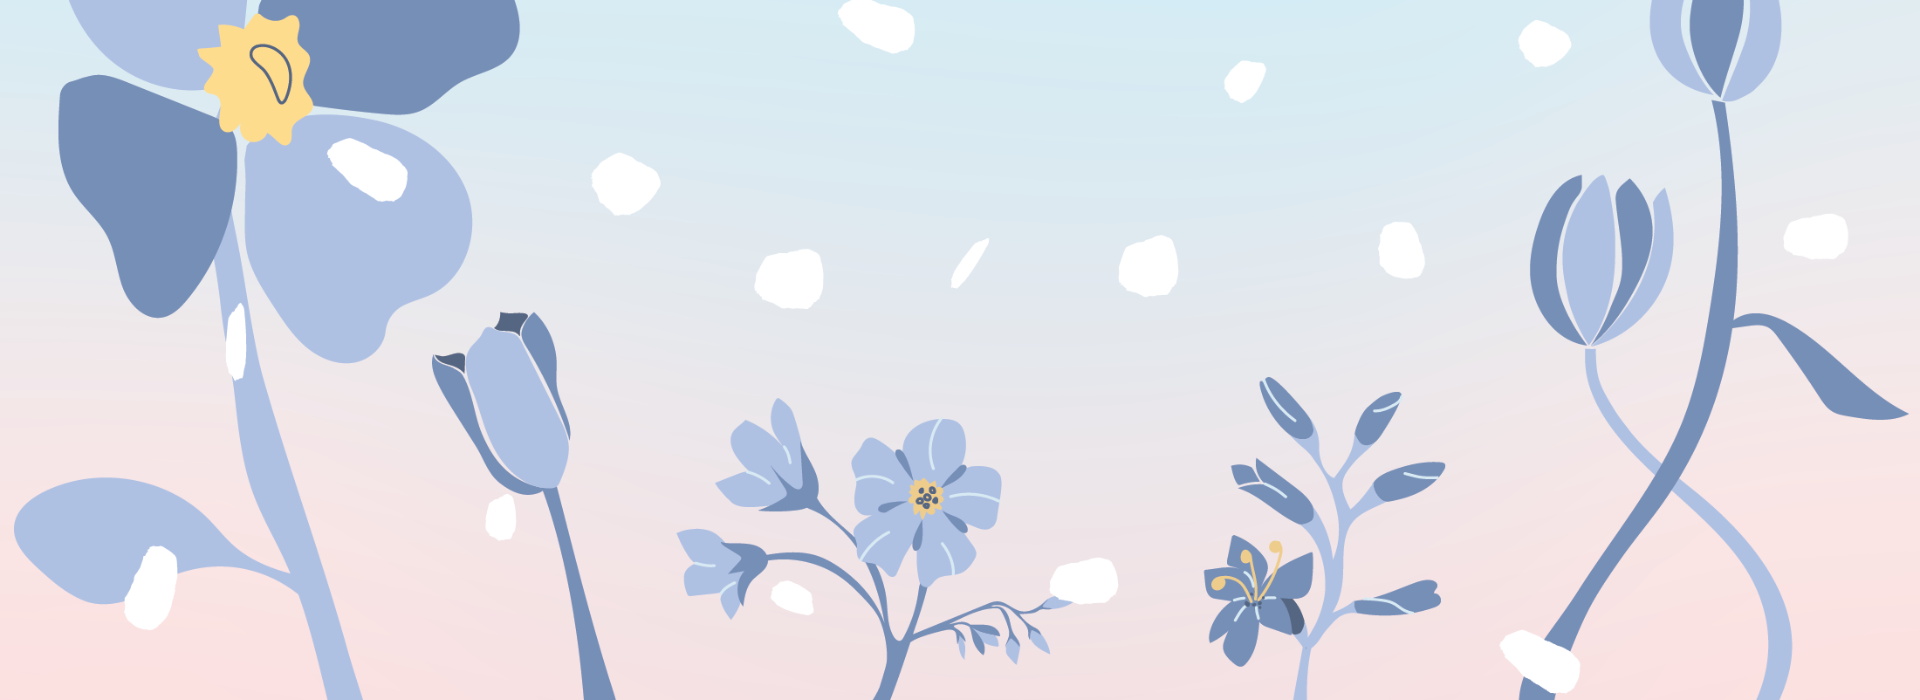 House of Organicin luonnollisen joulukalenterinen talvinen kuvitus, jossa lumihiutaleet laskeutuvat utuiselta pastellinsävyiseltä taivaalta sinertävien kukkien ylle.